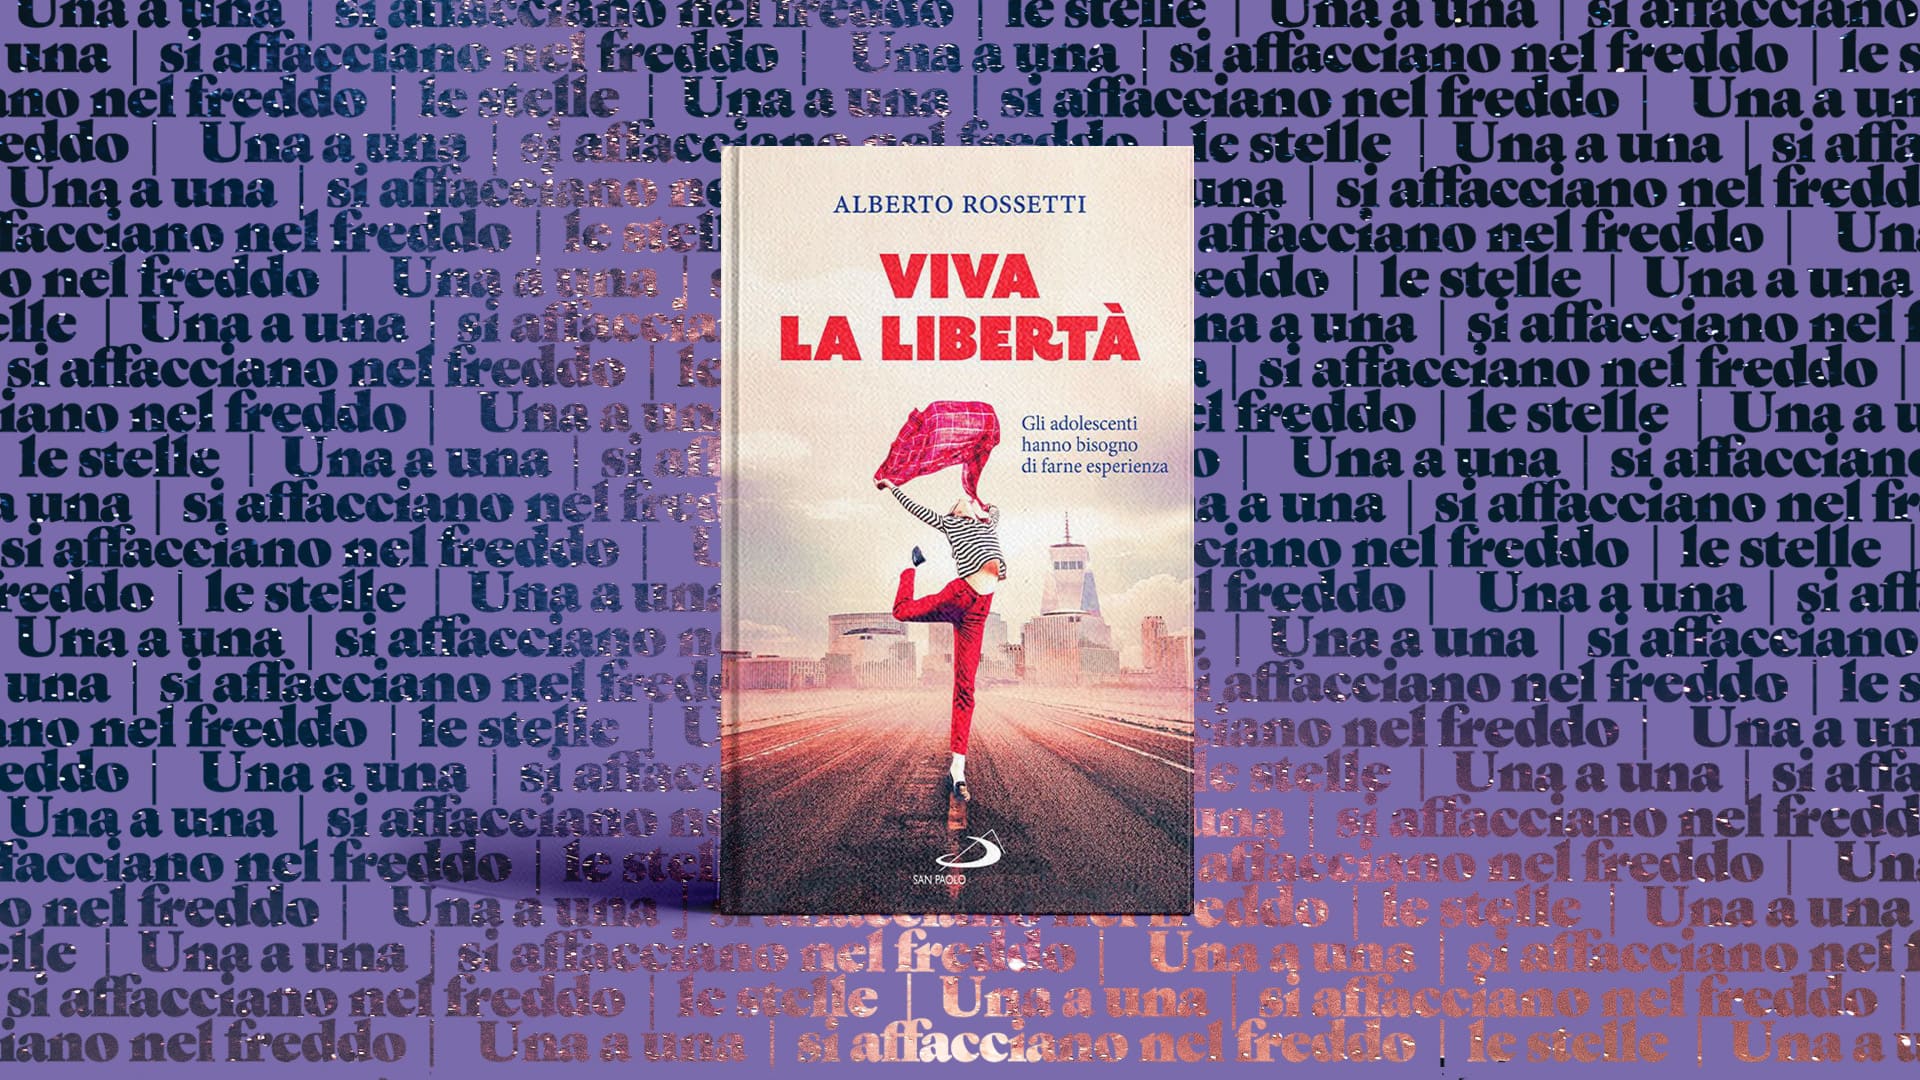 Alberto-Rossetti-Viva-la-libertà